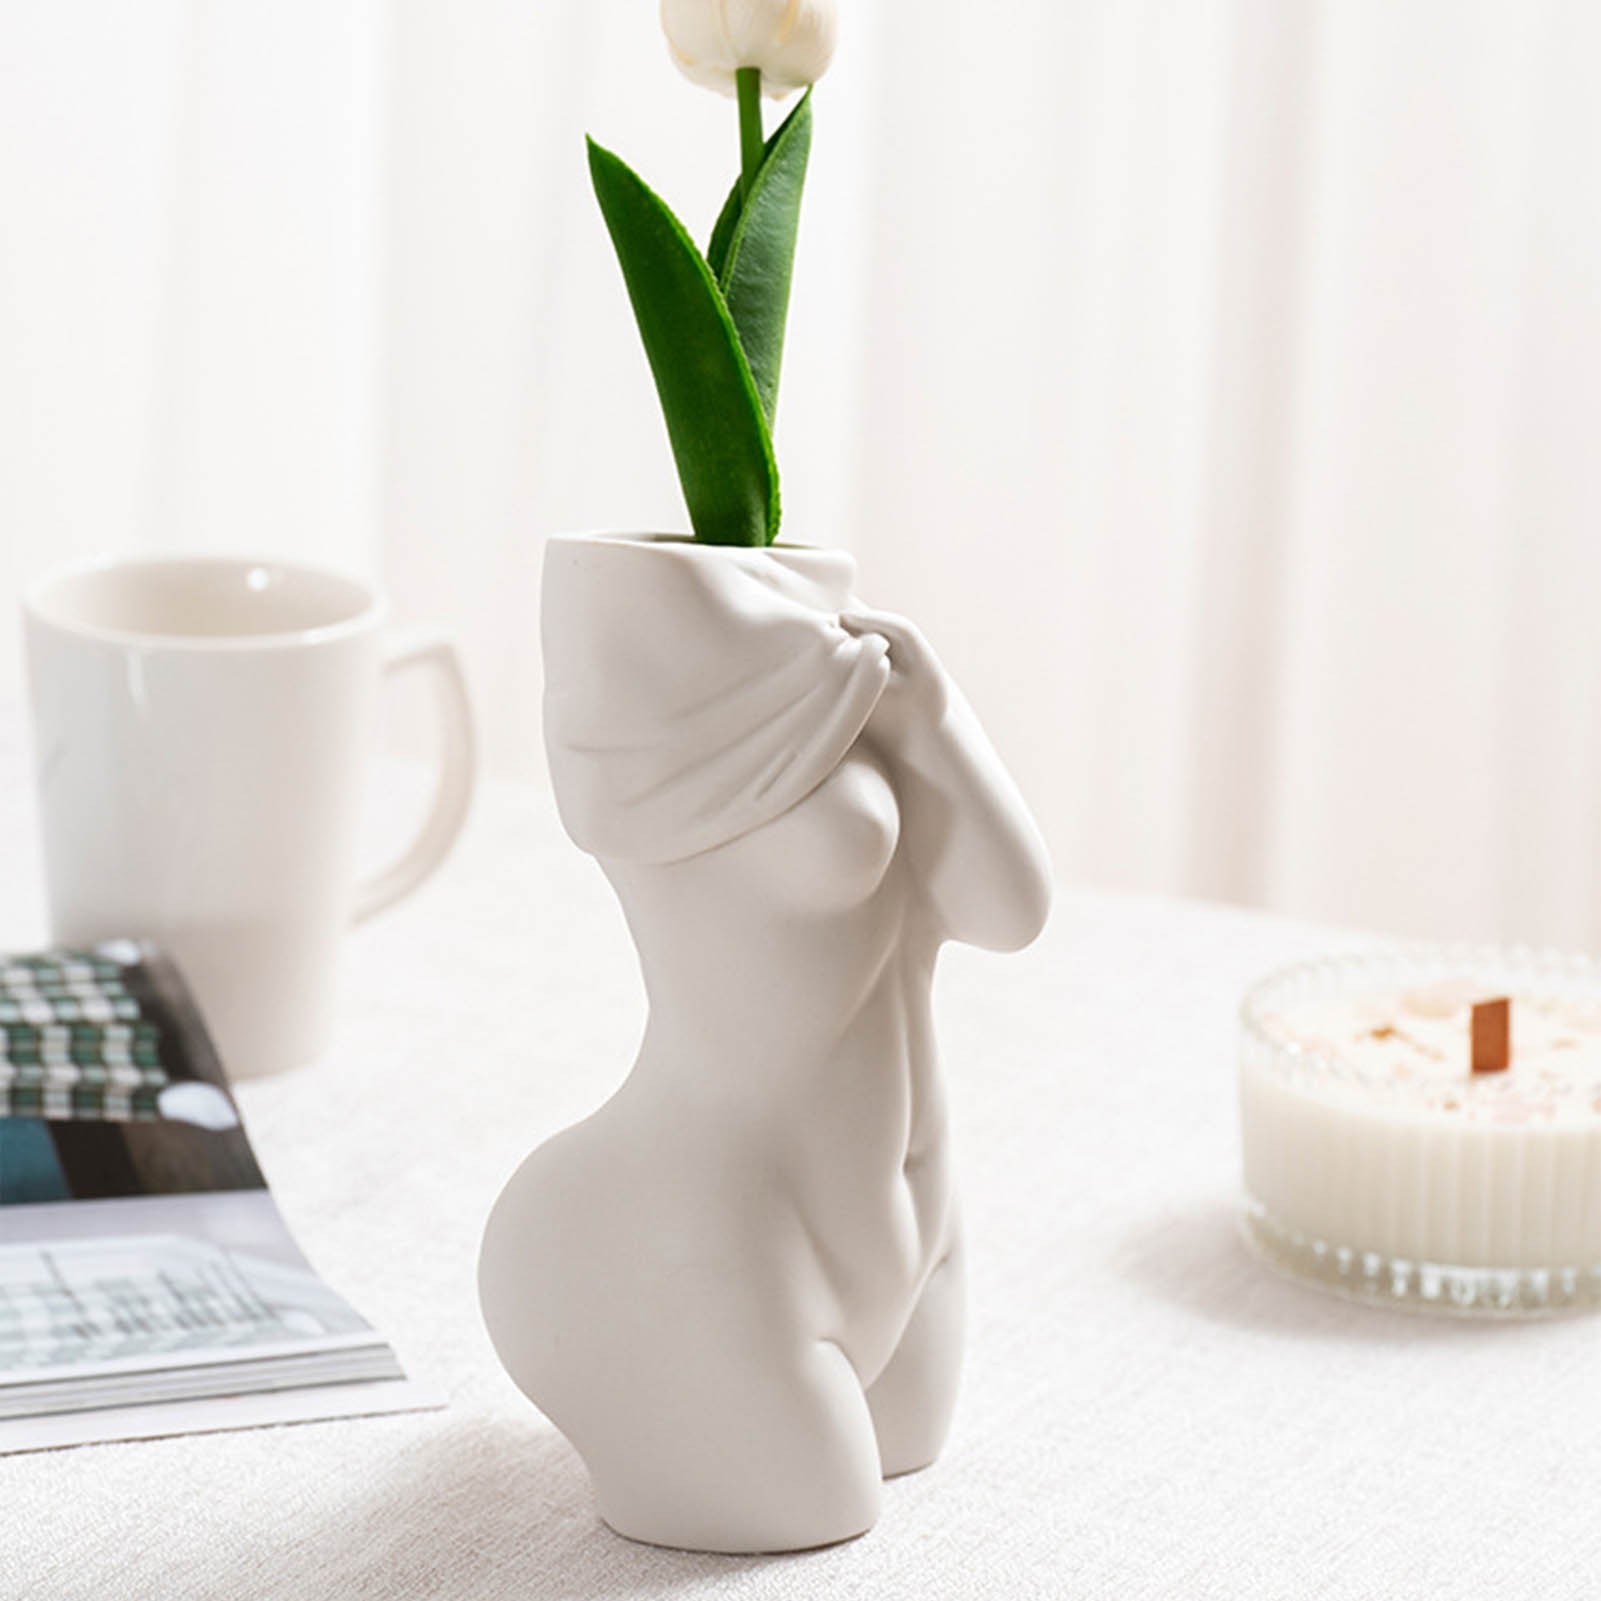 Human Ceramic Vases